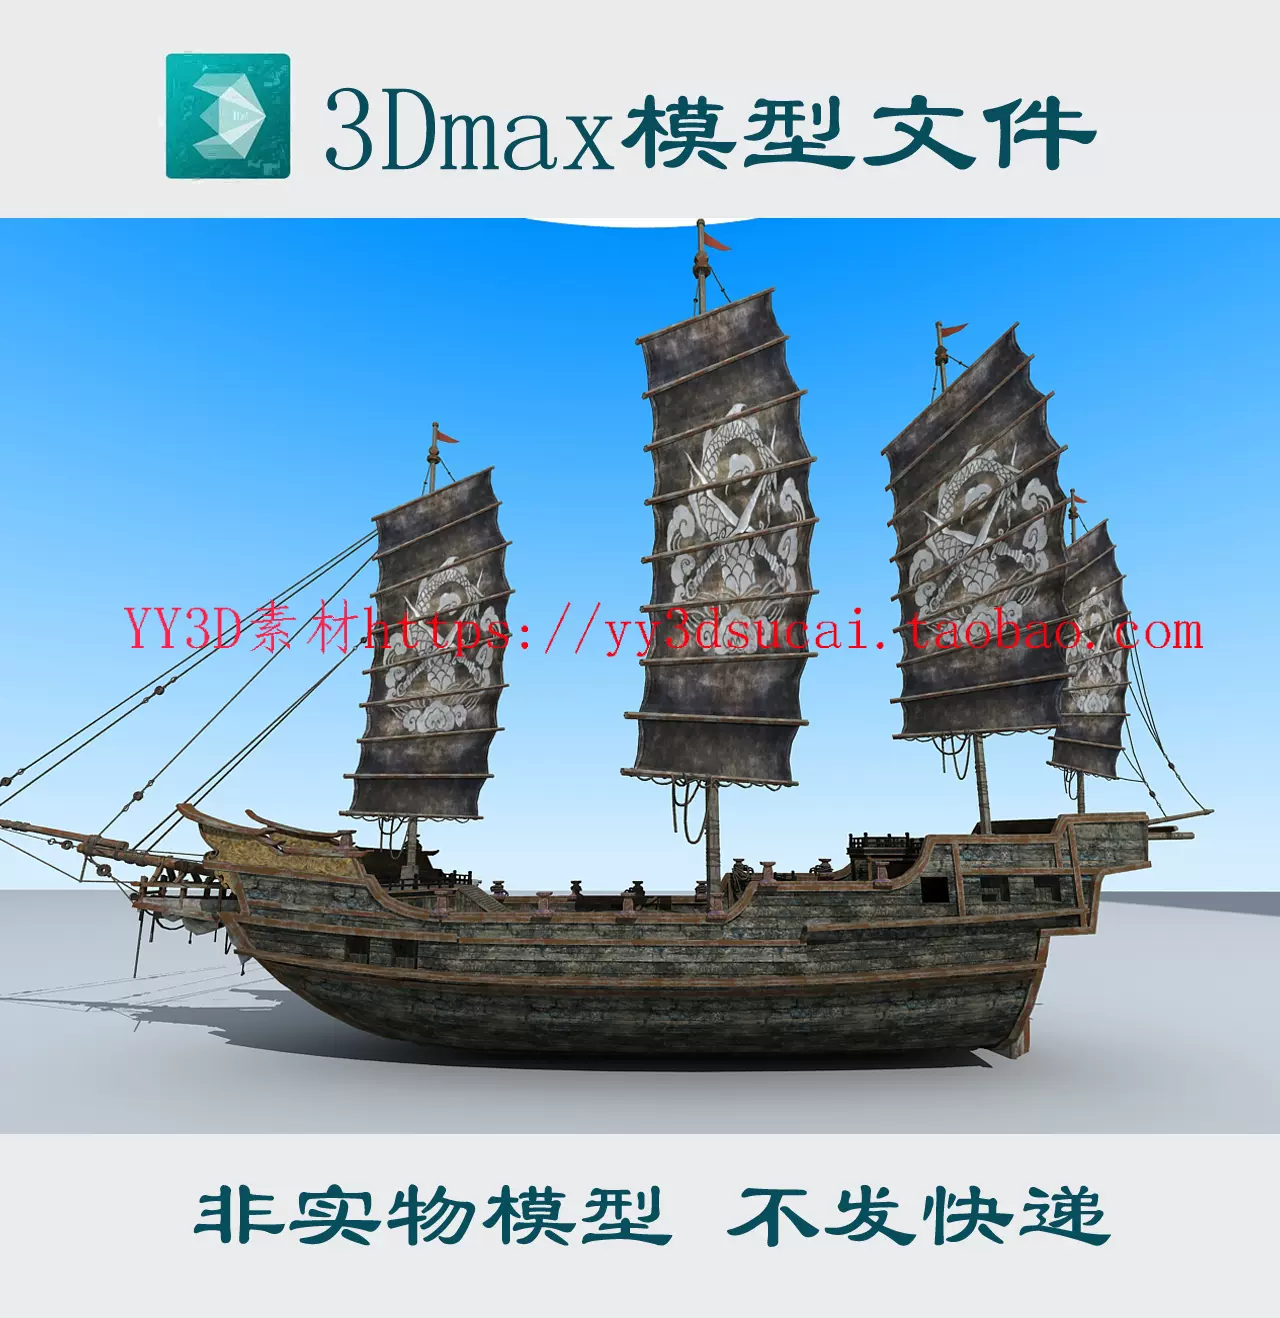 明代大船3dmax模型鄭和船寶船3d模型古代戰船c4d模型fbx帆船obj模-Taobao